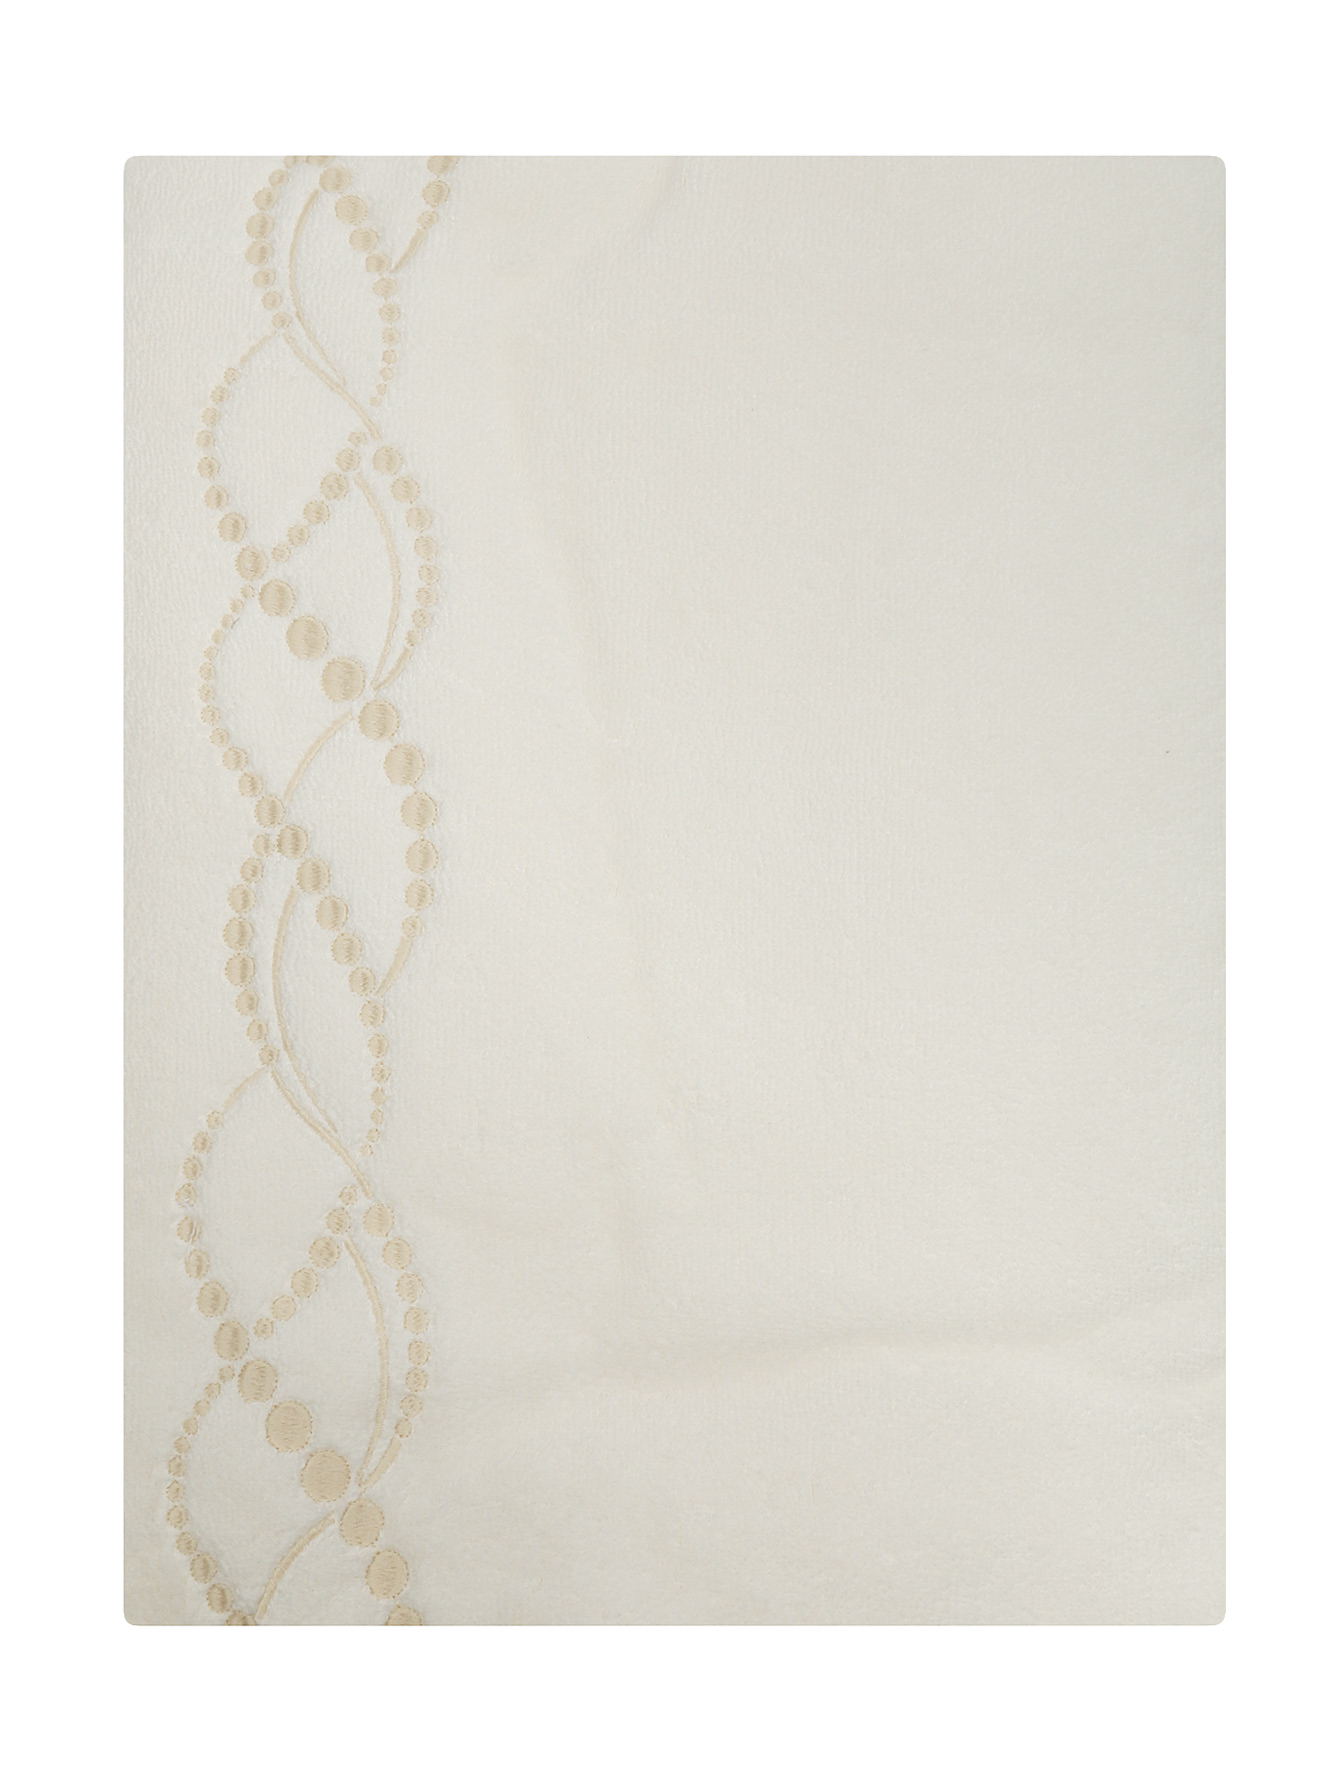 Полотенце из хлопковой махровой ткани с вышивкой  - Обтравка1